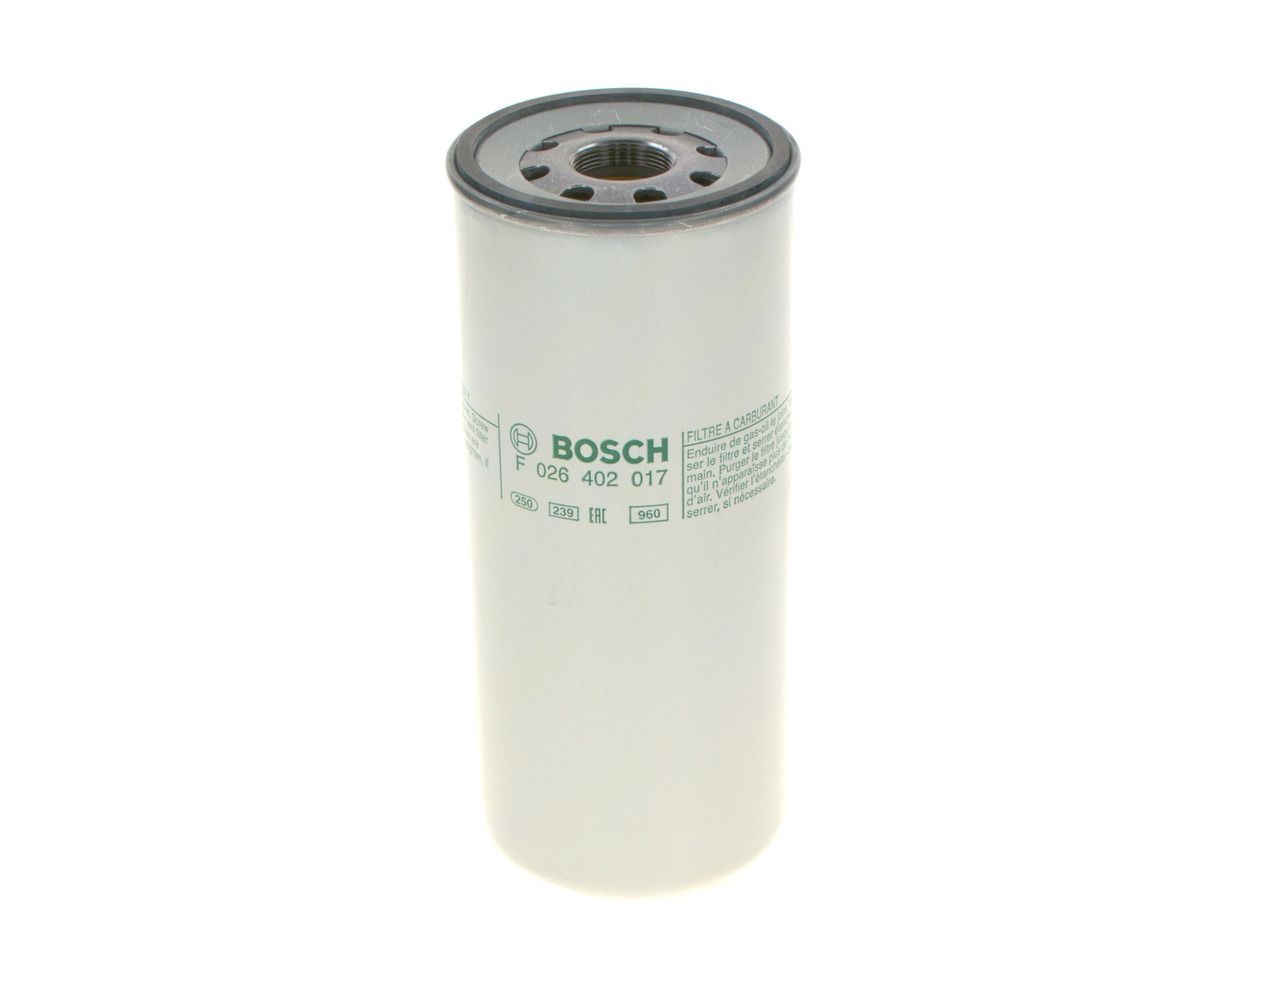 BOSCH 0 986 450 212 Fuel filter 7mm, 8mm